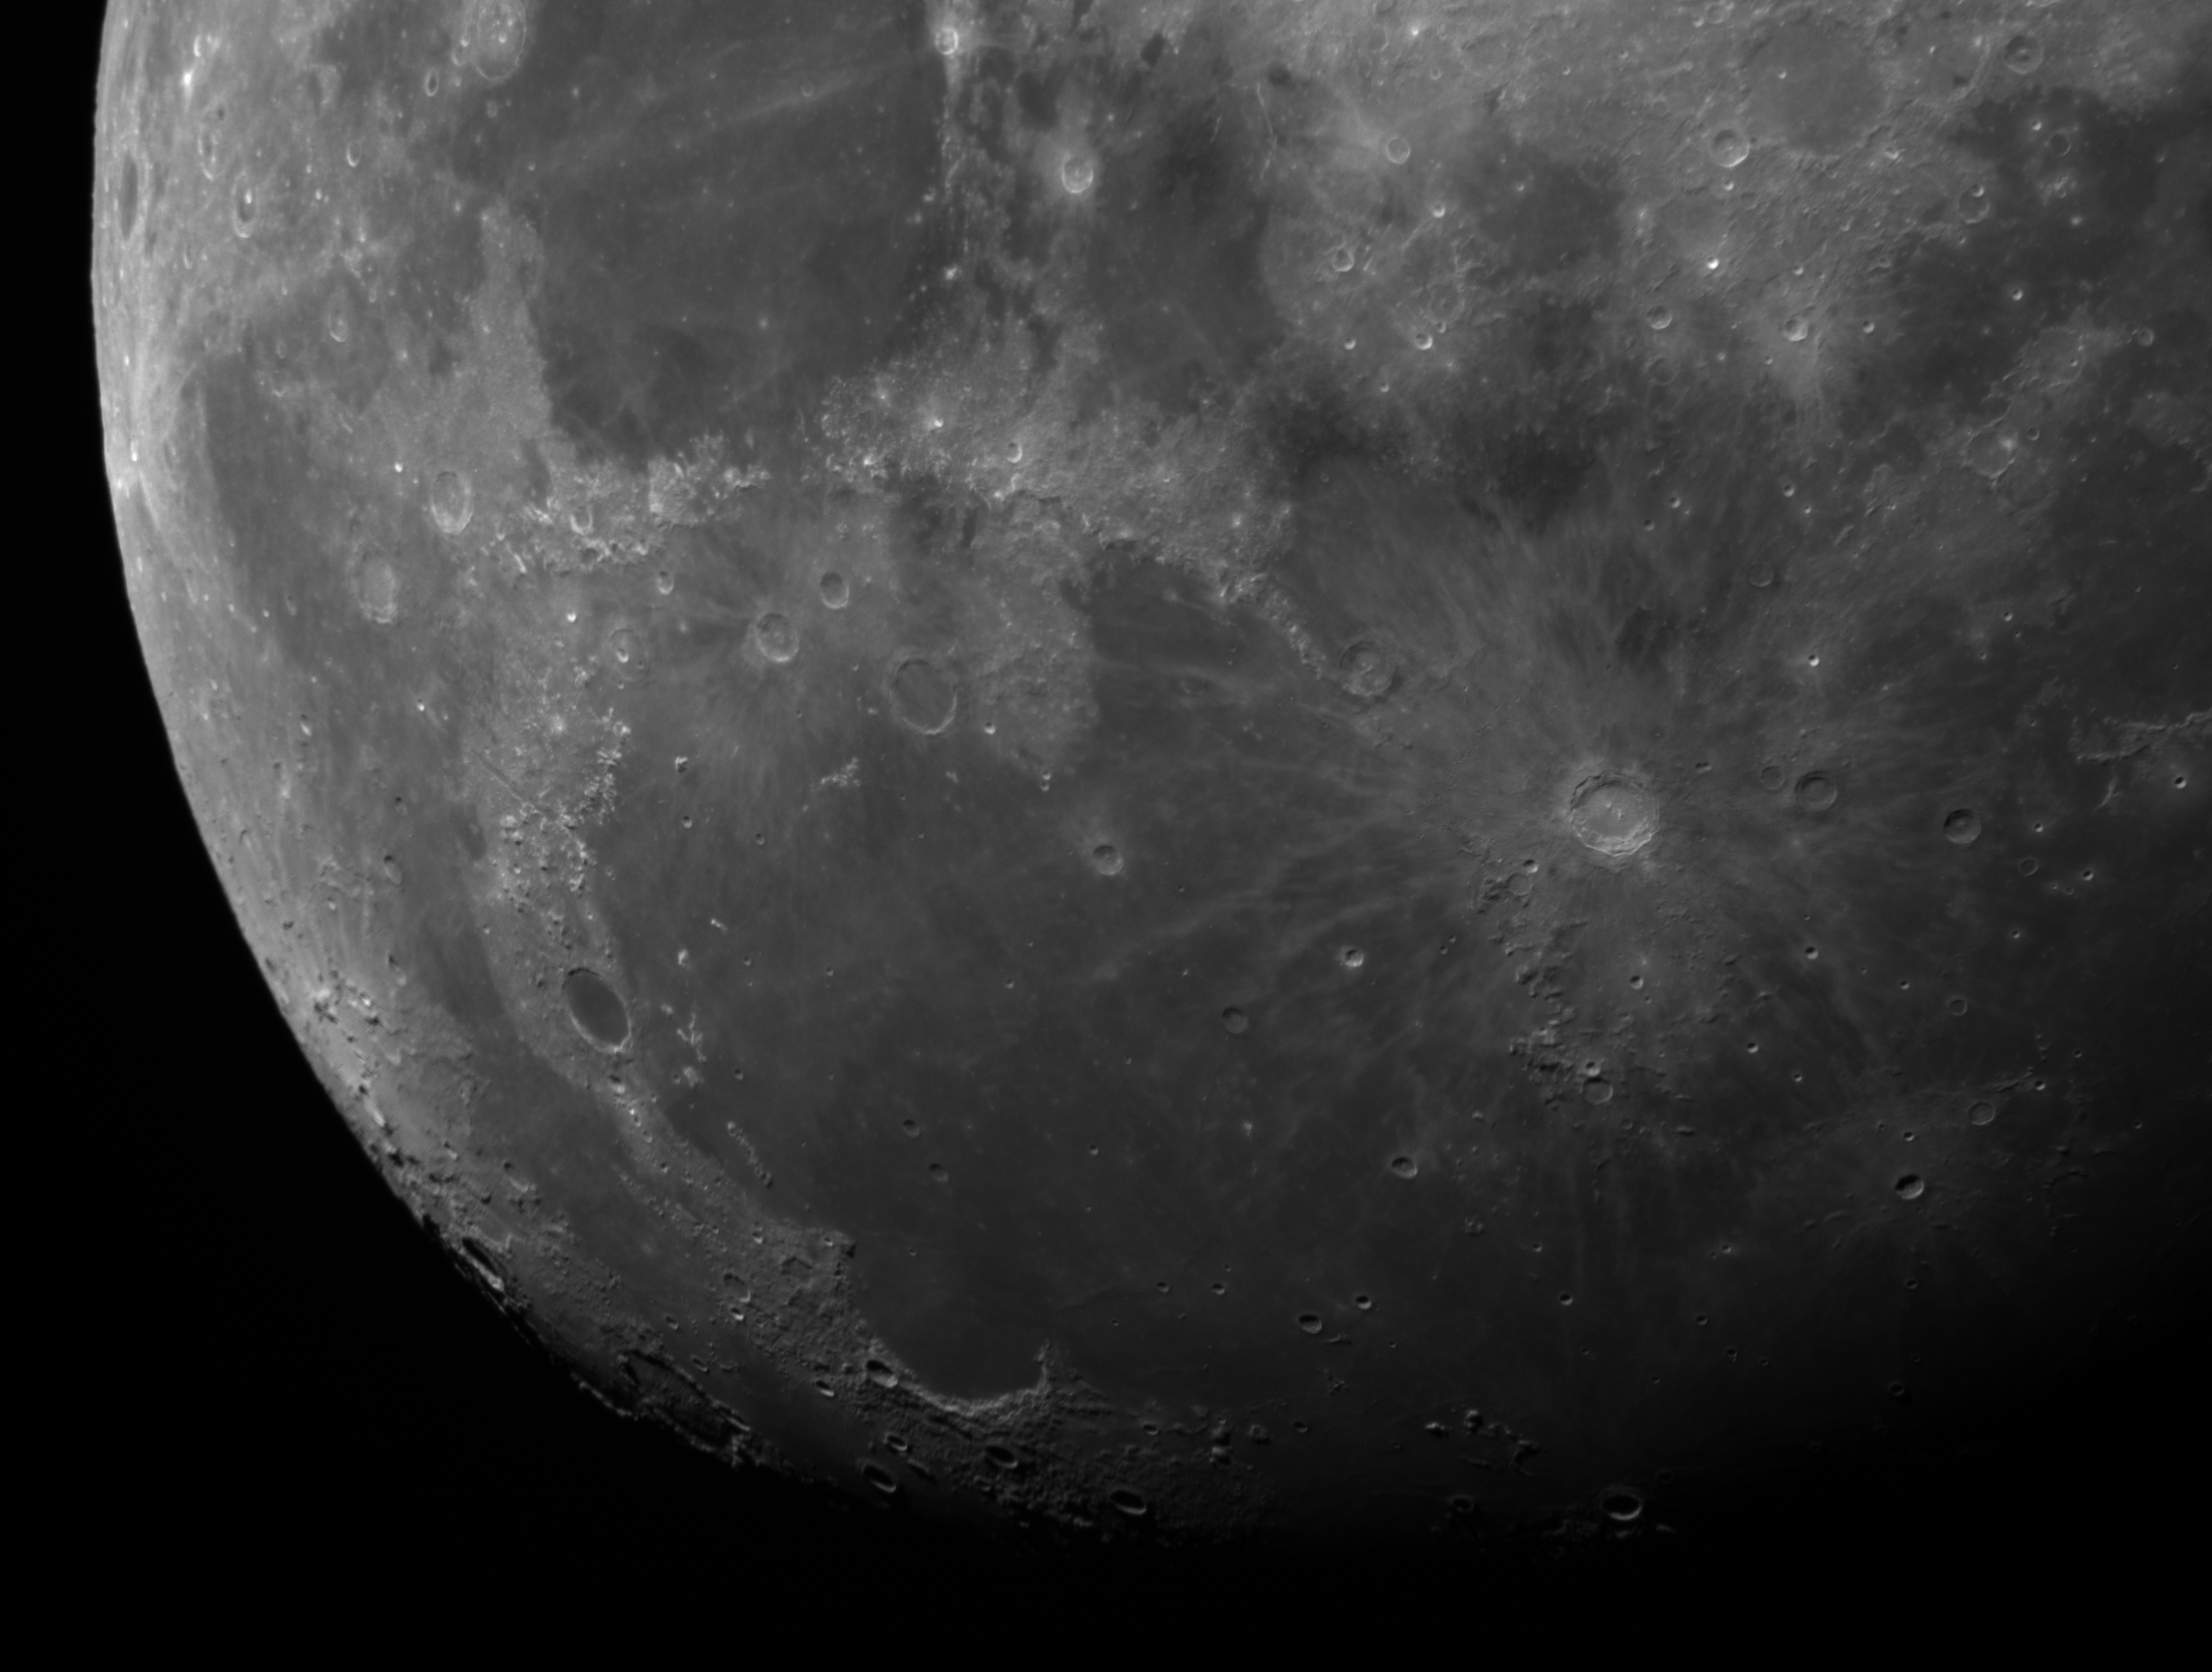 Měsíc, kráter Koperník, 98 km v průměru, 4.4.2020, 21:11 SELČ